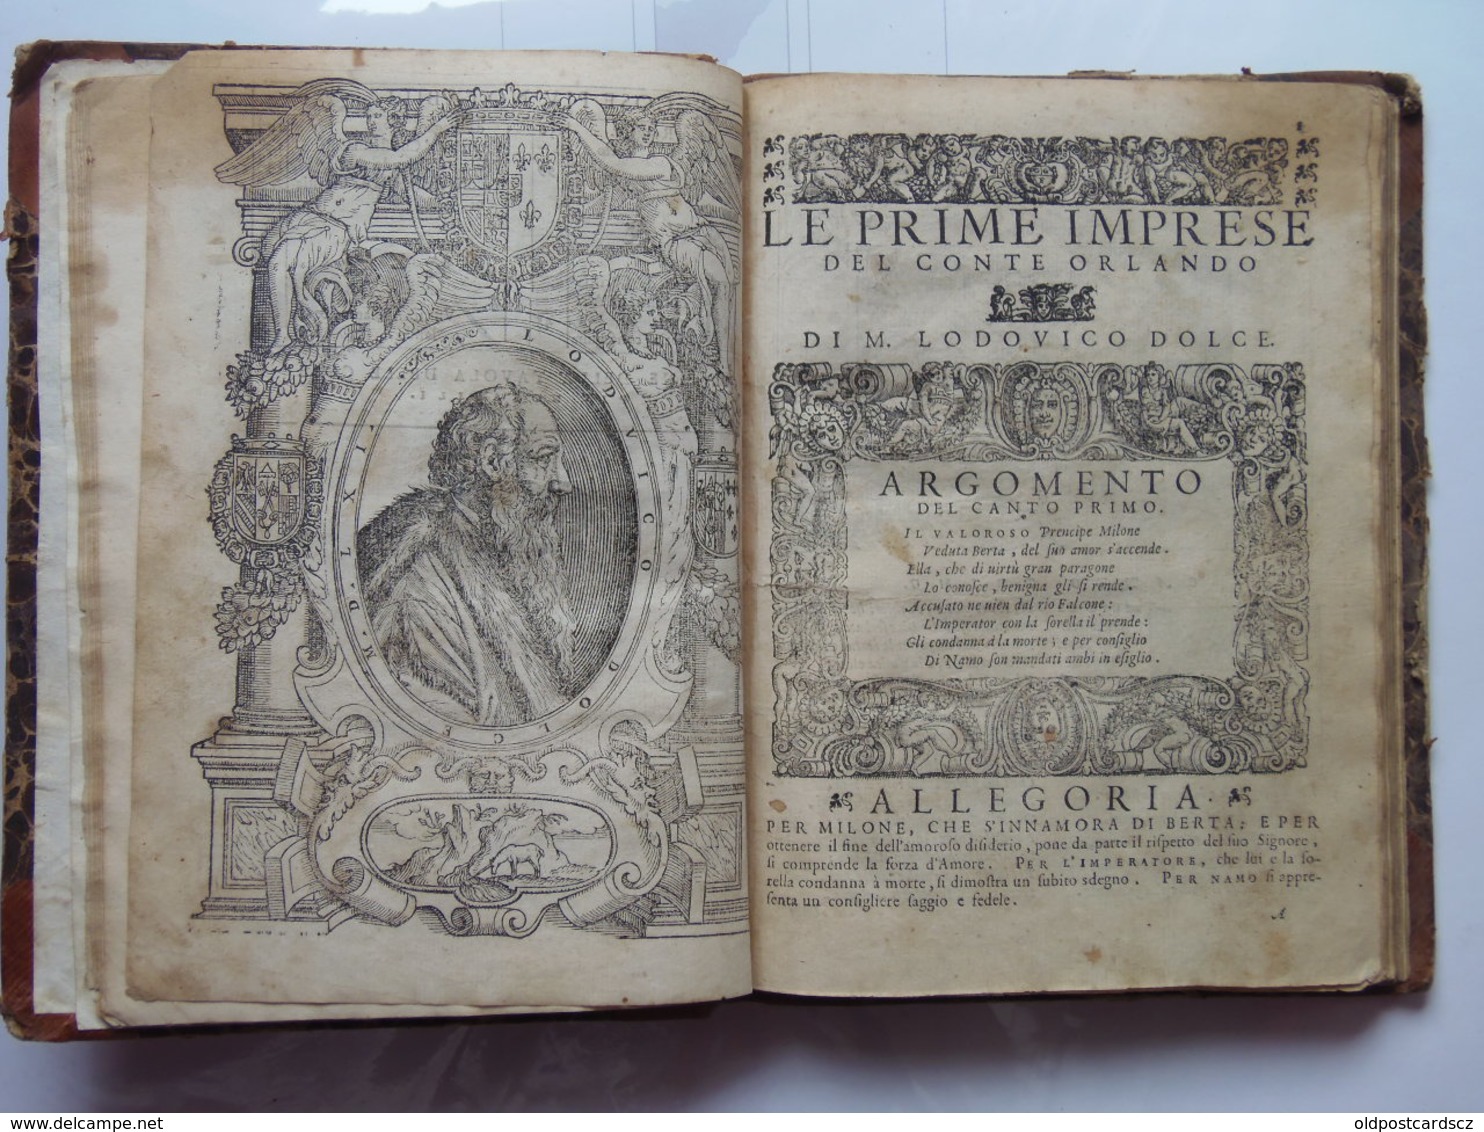 Lodovico Dolce Le Prime Imprese Del Conte Orlando Apresso Gabriel Giolito de Ferrari Venice 1572. Italia RARA Book Books